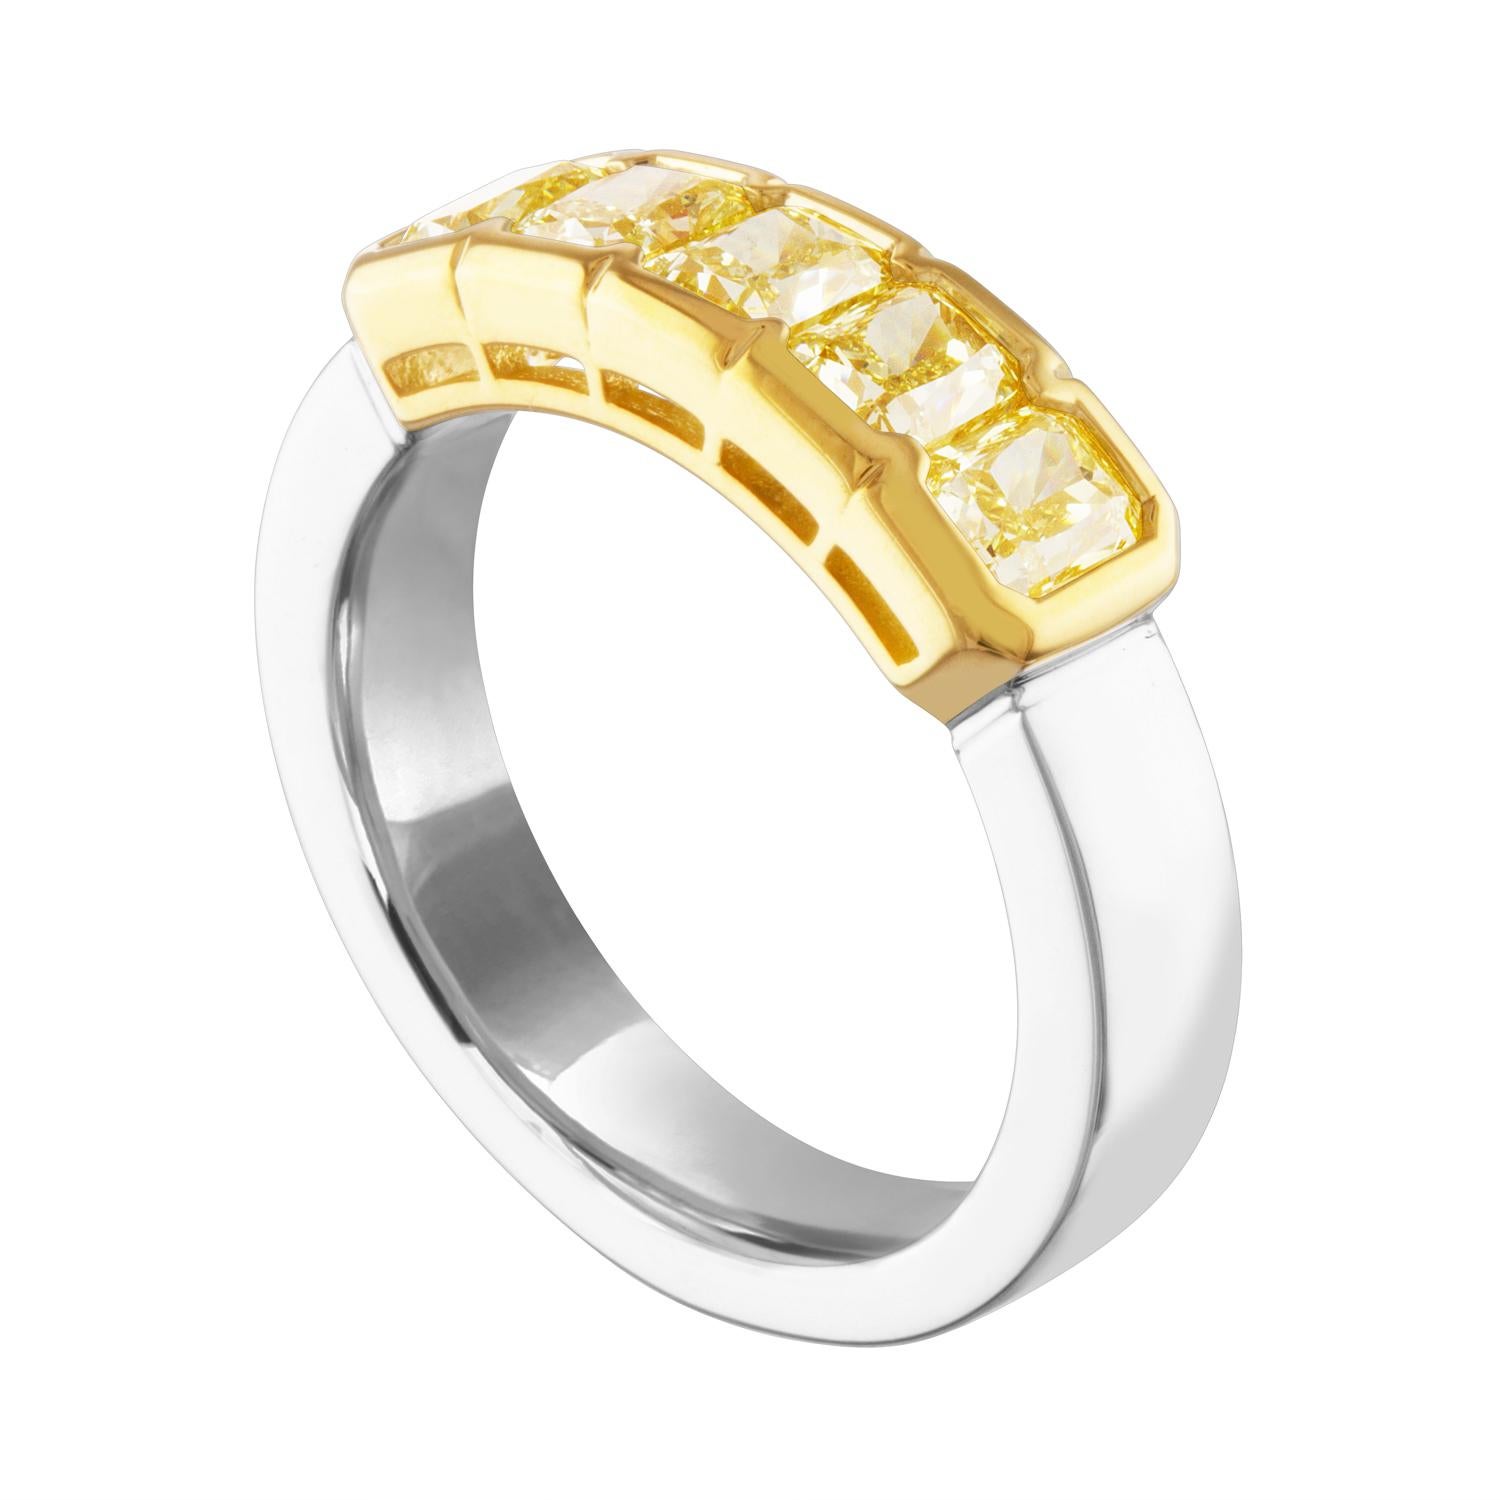 Sehr schöne Diamant 5 Stein Halb Band Ring
Der Ring ist 14K Gelbgold & PLT 950
Es gibt 5 Radiant Cut Fancy Yellow Diamanten Bezel Set.
Es gibt 1,66 Karat in Diamanten VS
Der Ring ist eine Größe 6, sizable.
Das Band ist 5,6 mm breit.
Der Ring wiegt